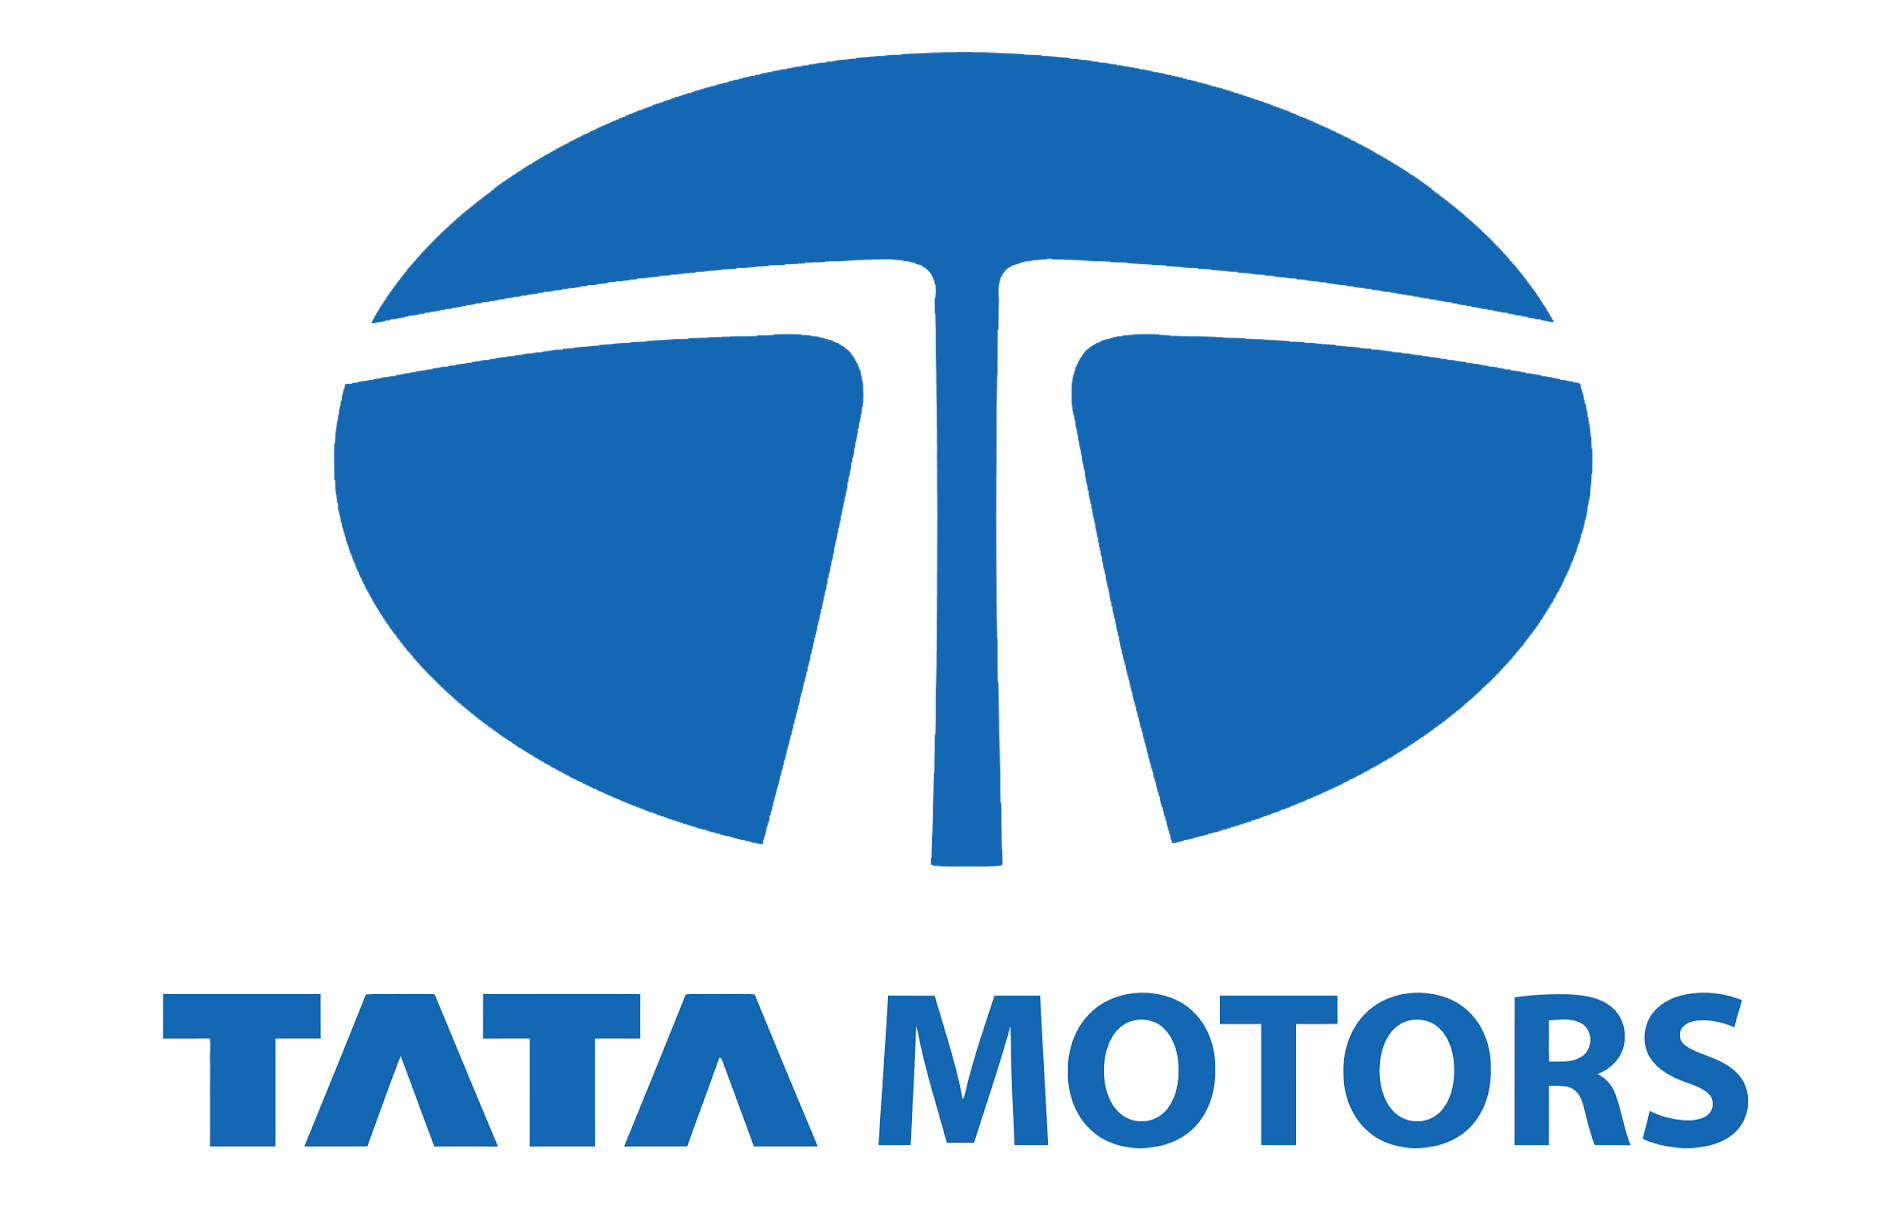 Tata Motors Cars Showroom - Adishakti Cars - Logo